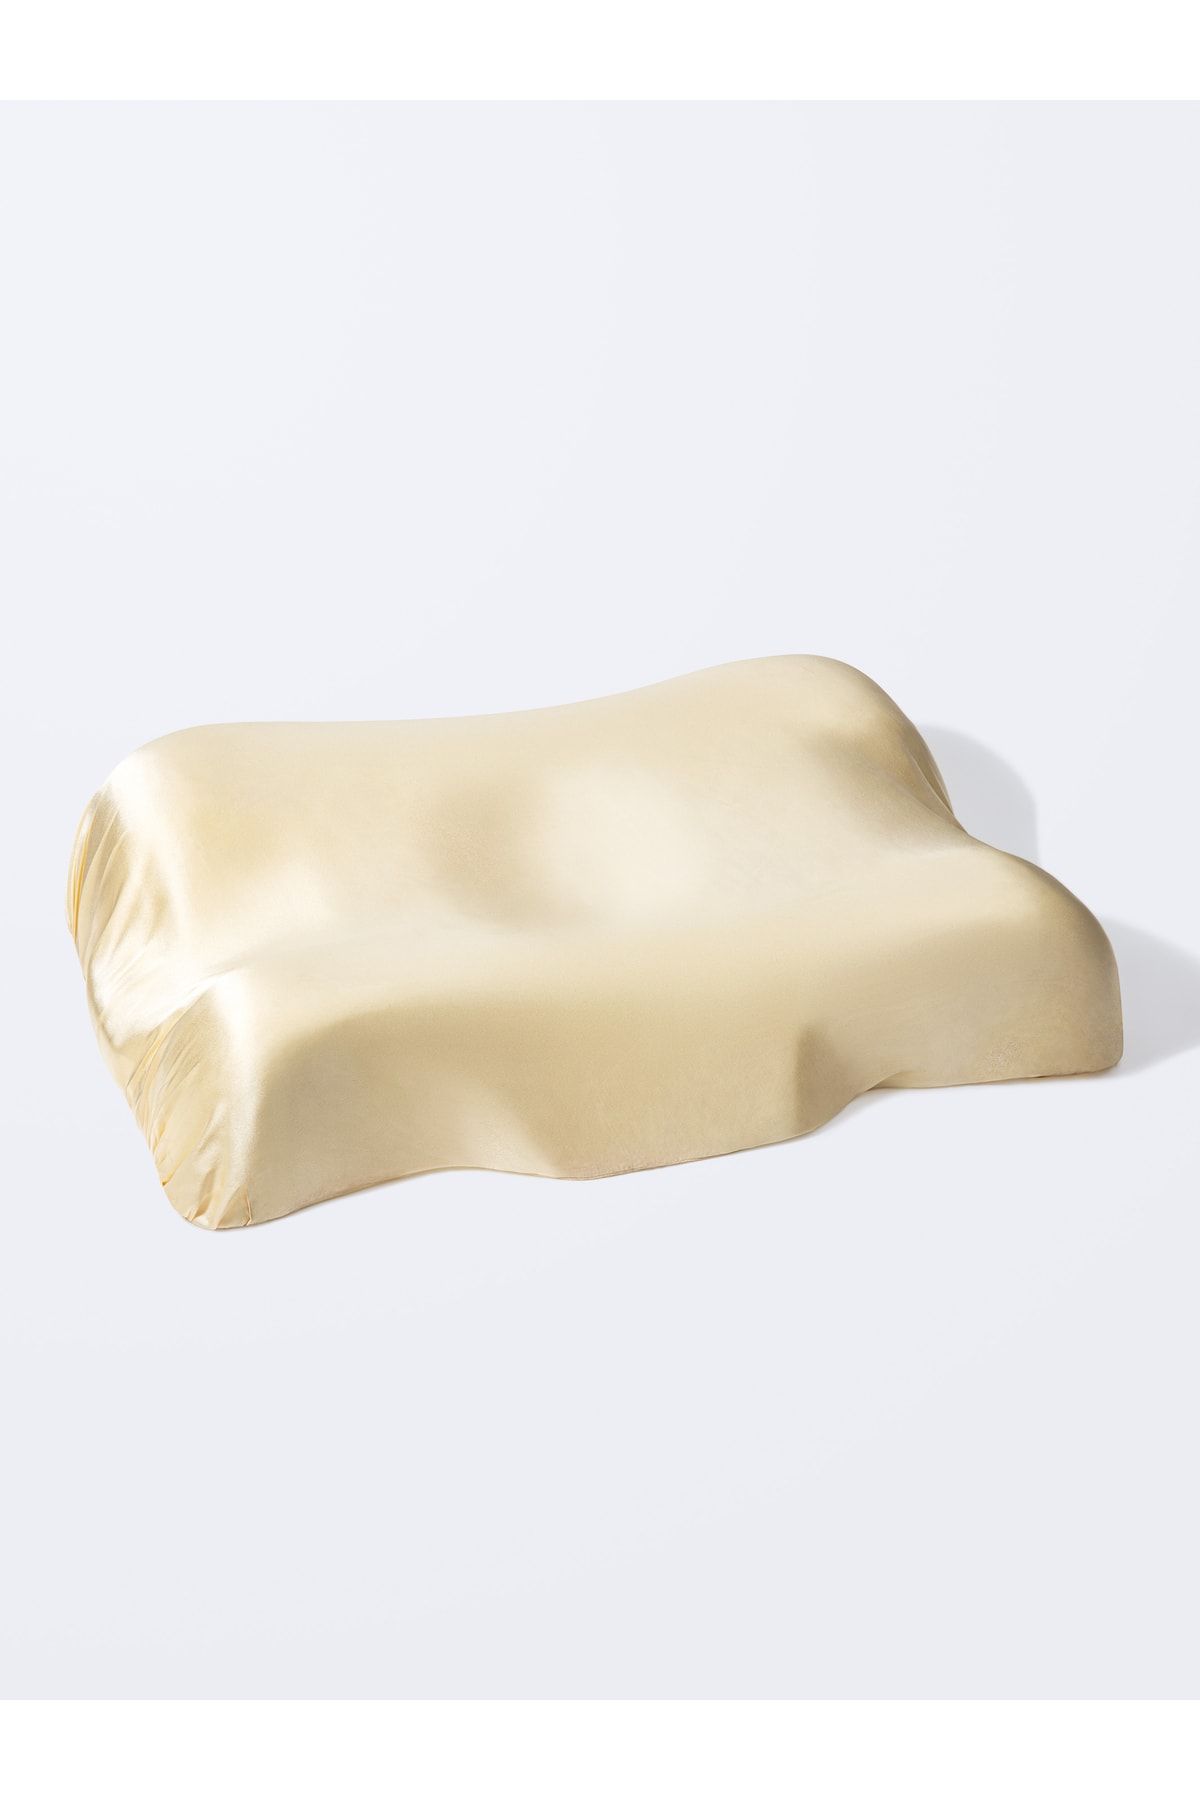 Beauty Pillow Kırışıklık Önleyici Ortopedik Güzellik Yastığı - Bej %100 Ipek Kılıf Ile